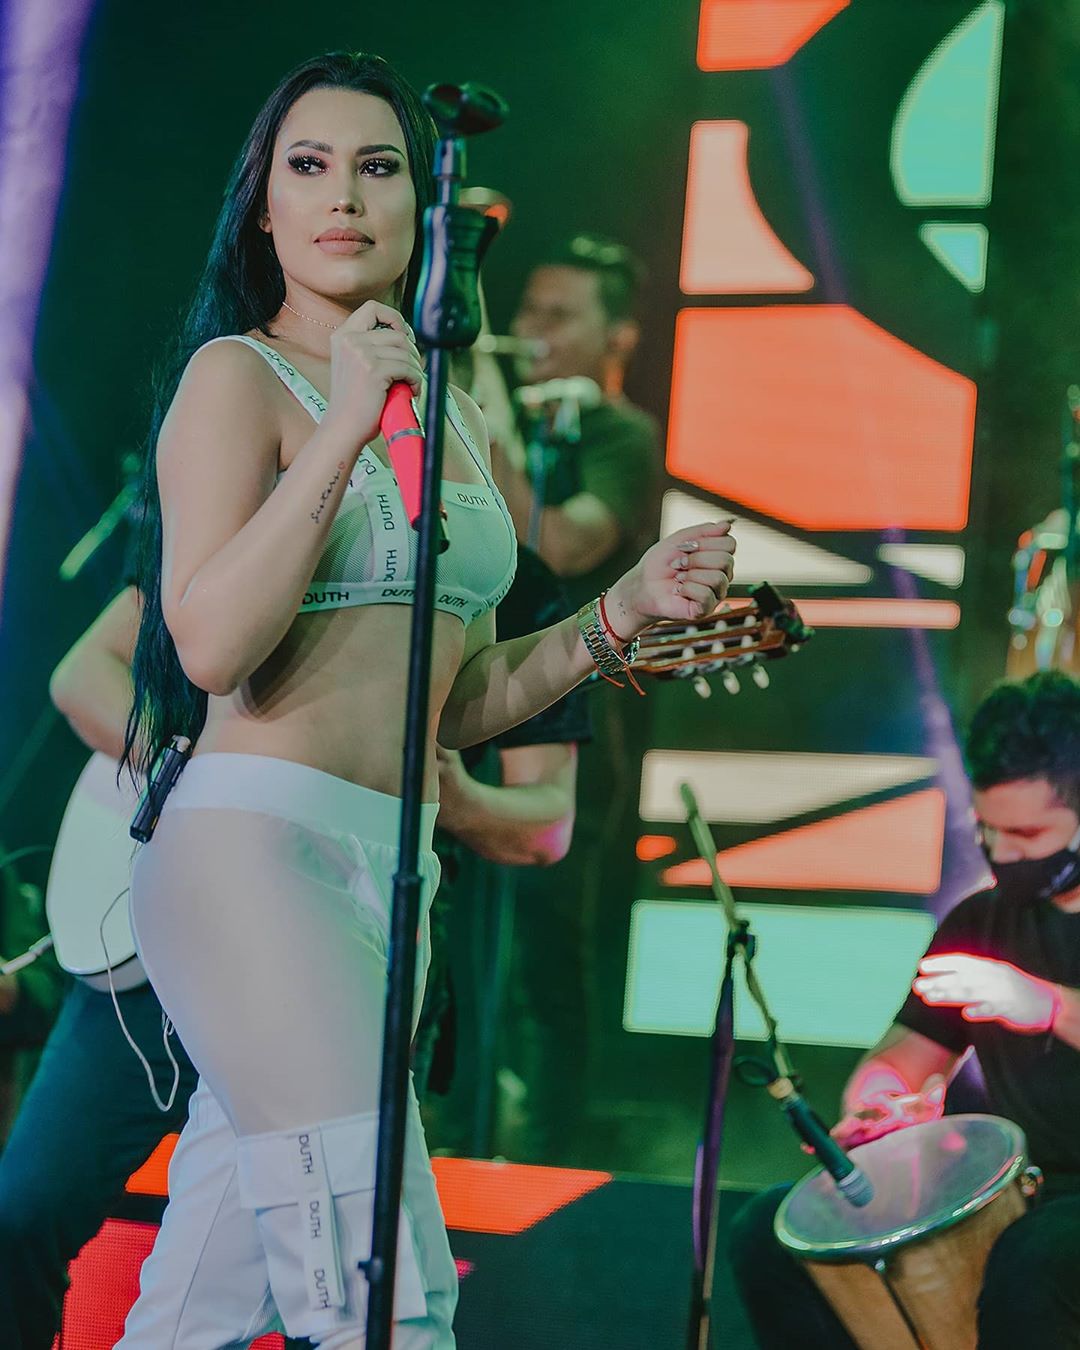 La cantante Ana del Castillo, publica el fragmento de dos canciones y pone a sus seguidores para que escojan la mejor